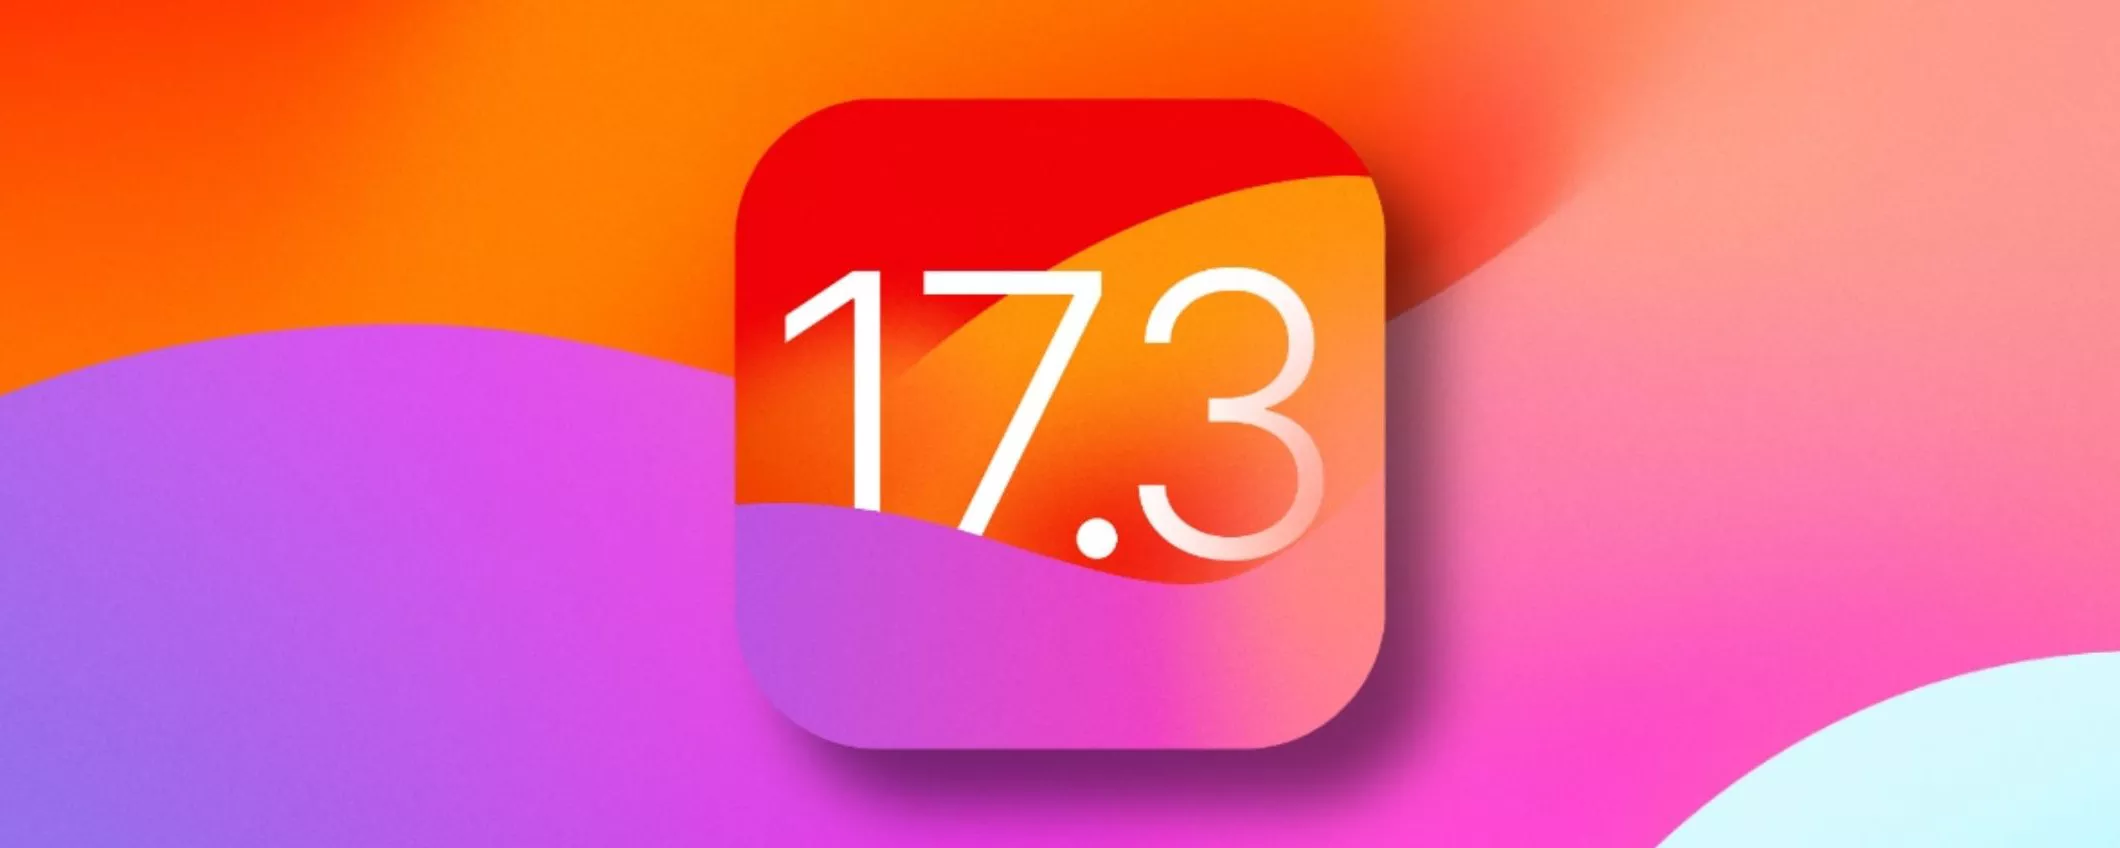 iOS 17.3, quando uscirà il nuovo aggiornamento